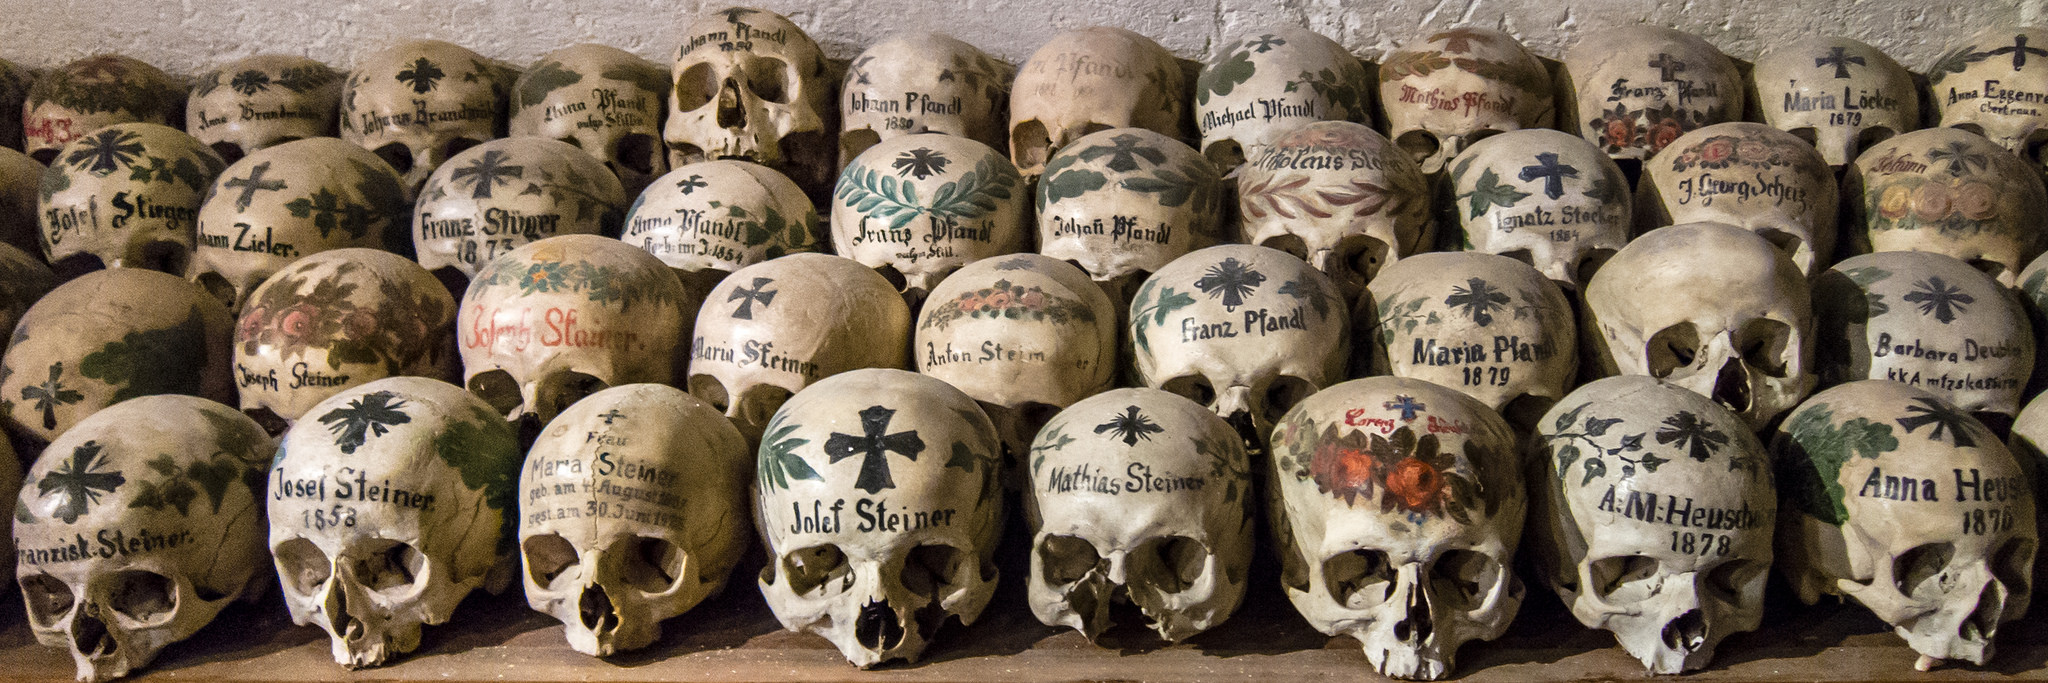 The Painted Skulls of Hallstatt